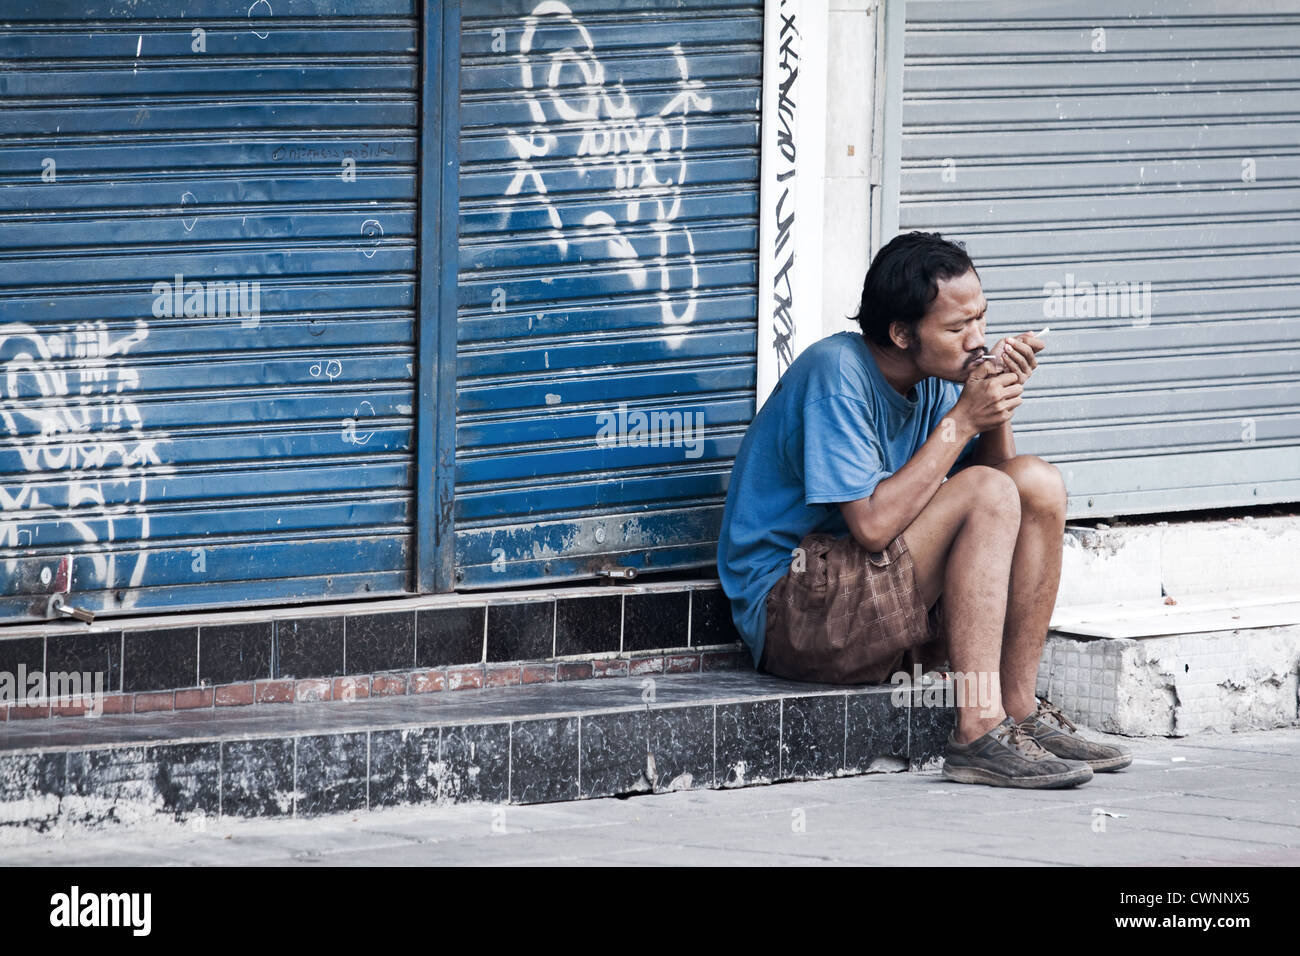 Uomo di illuminazione sat sigarette al di fuori di un negozio a Bangkok. Scena di strada di qualcuno verso il basso e a Bangkok. grintoso sfondo di graffiti sulle serrande del negozio Foto Stock